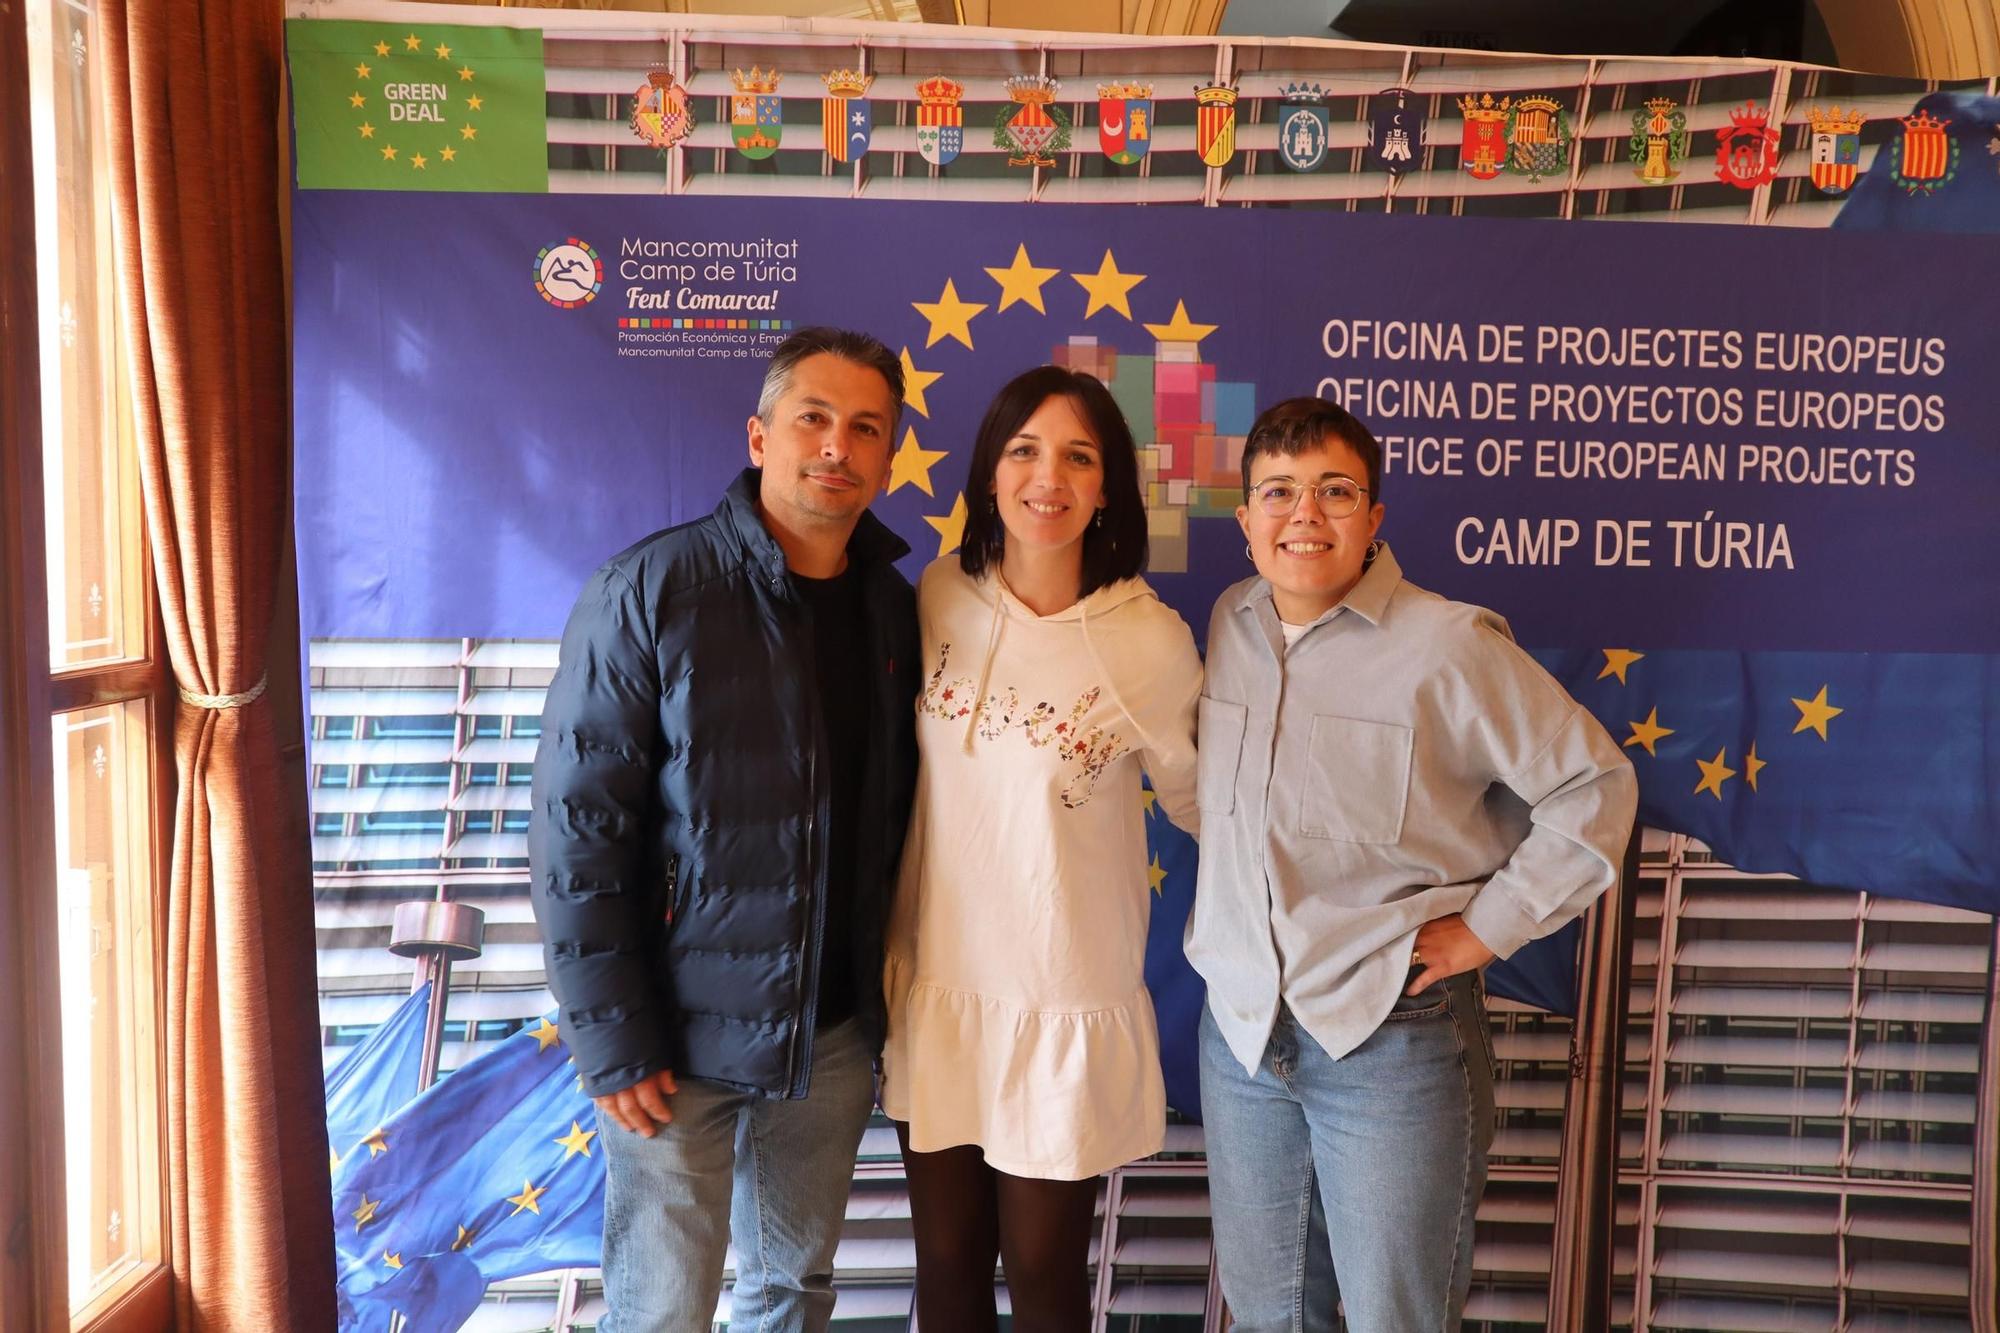 La Mancomunitat del Camp de Túria acerca las opciones laborales y de formación de la UE a los jóvenes